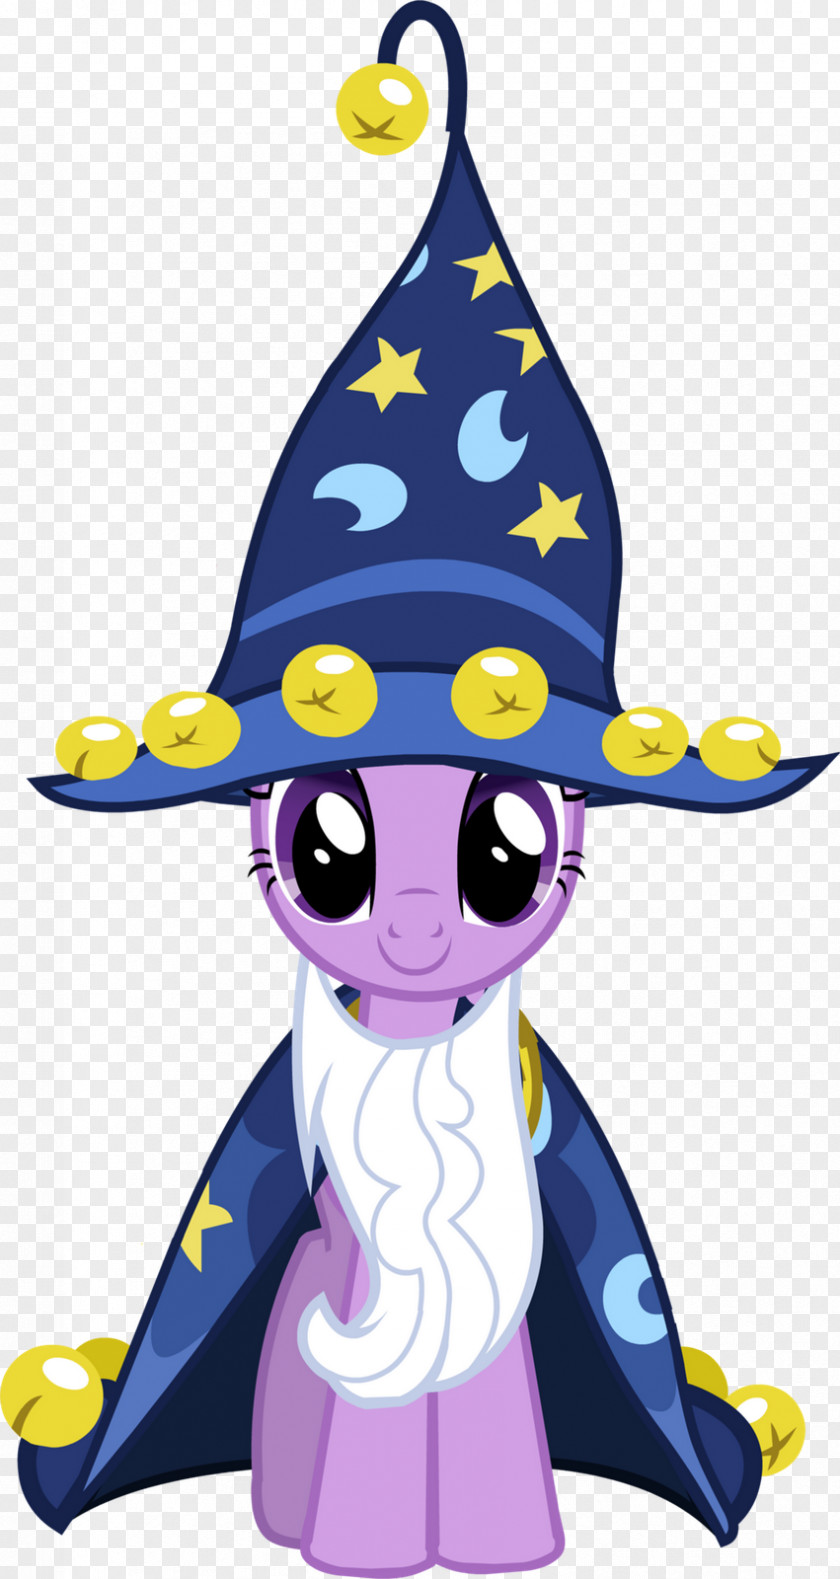 Castle Princess Twilight Sparkle My Little Pony: Friendship Is Magic Fandom PNG